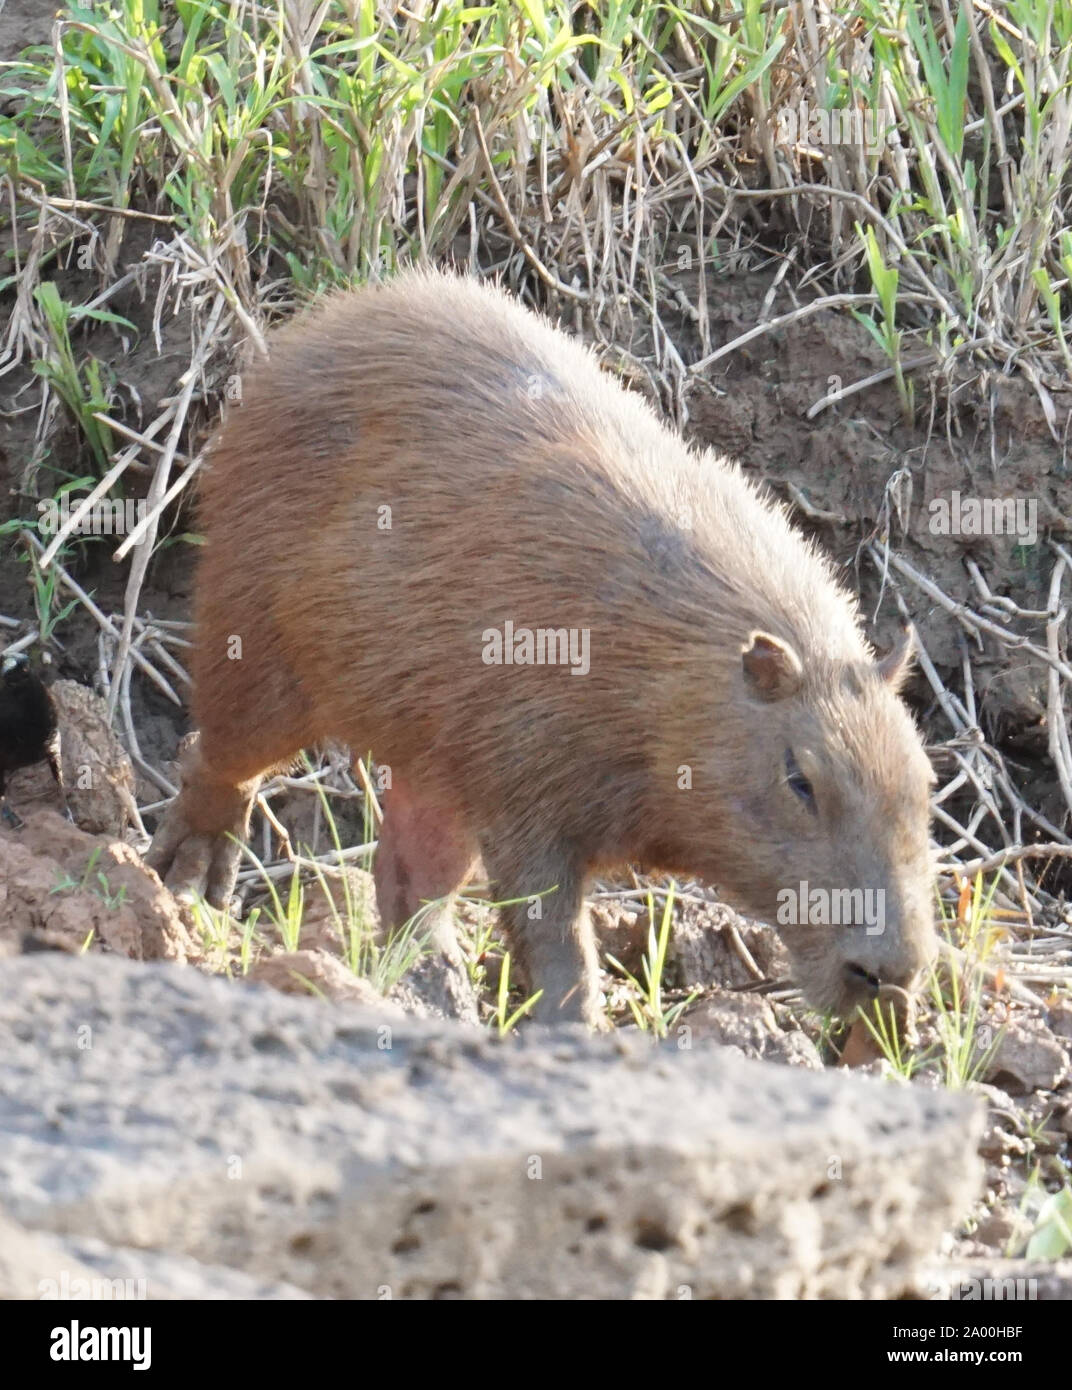 Das Capybara (Hydrochoerus hydrochaeris) ist ein Säugetier aus Südamerika.  Es ist das größte lebende Nagetier der Welt. Auch als chigüire, chigüiro  und carpincho, dies ist ein wildes Tier, das am Ufer des